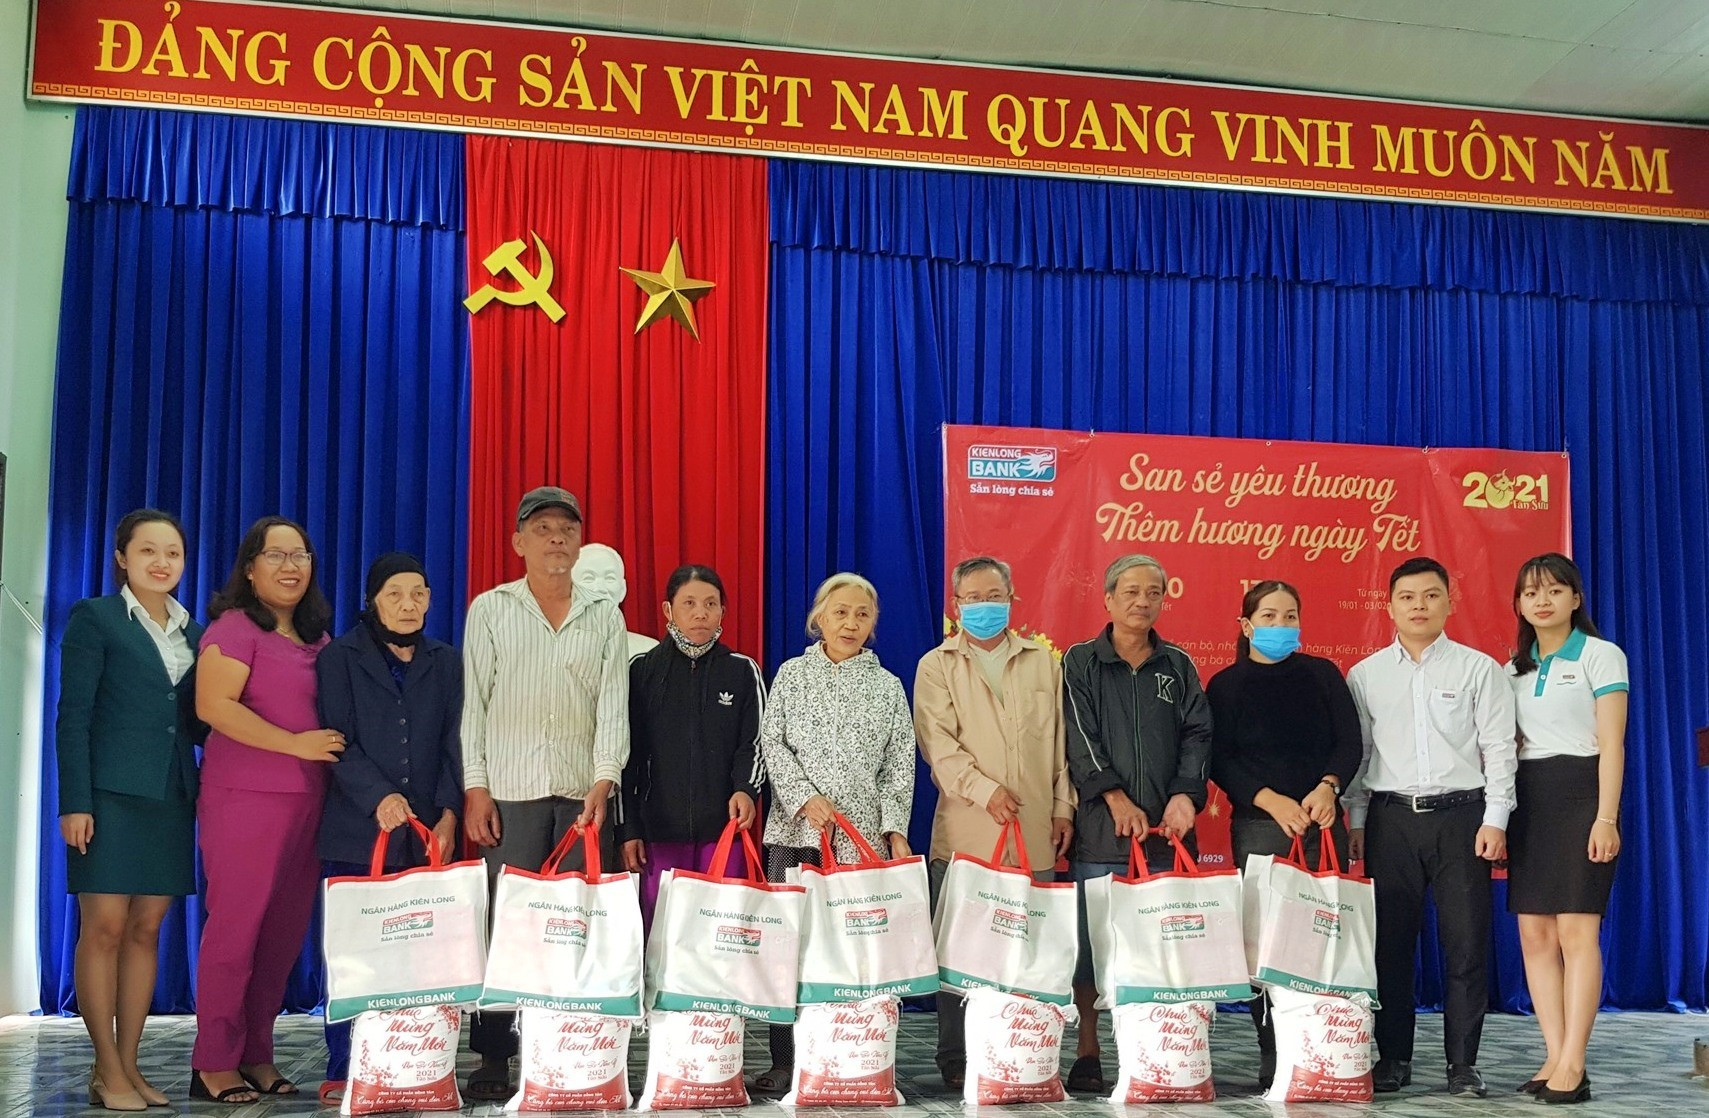 Ngân hàng Kiên Long chi nhánh Điện Bàn trao tặng quà cho các gia đình khó khăn tại xã Điện Minh và phường Vĩnh Điện.